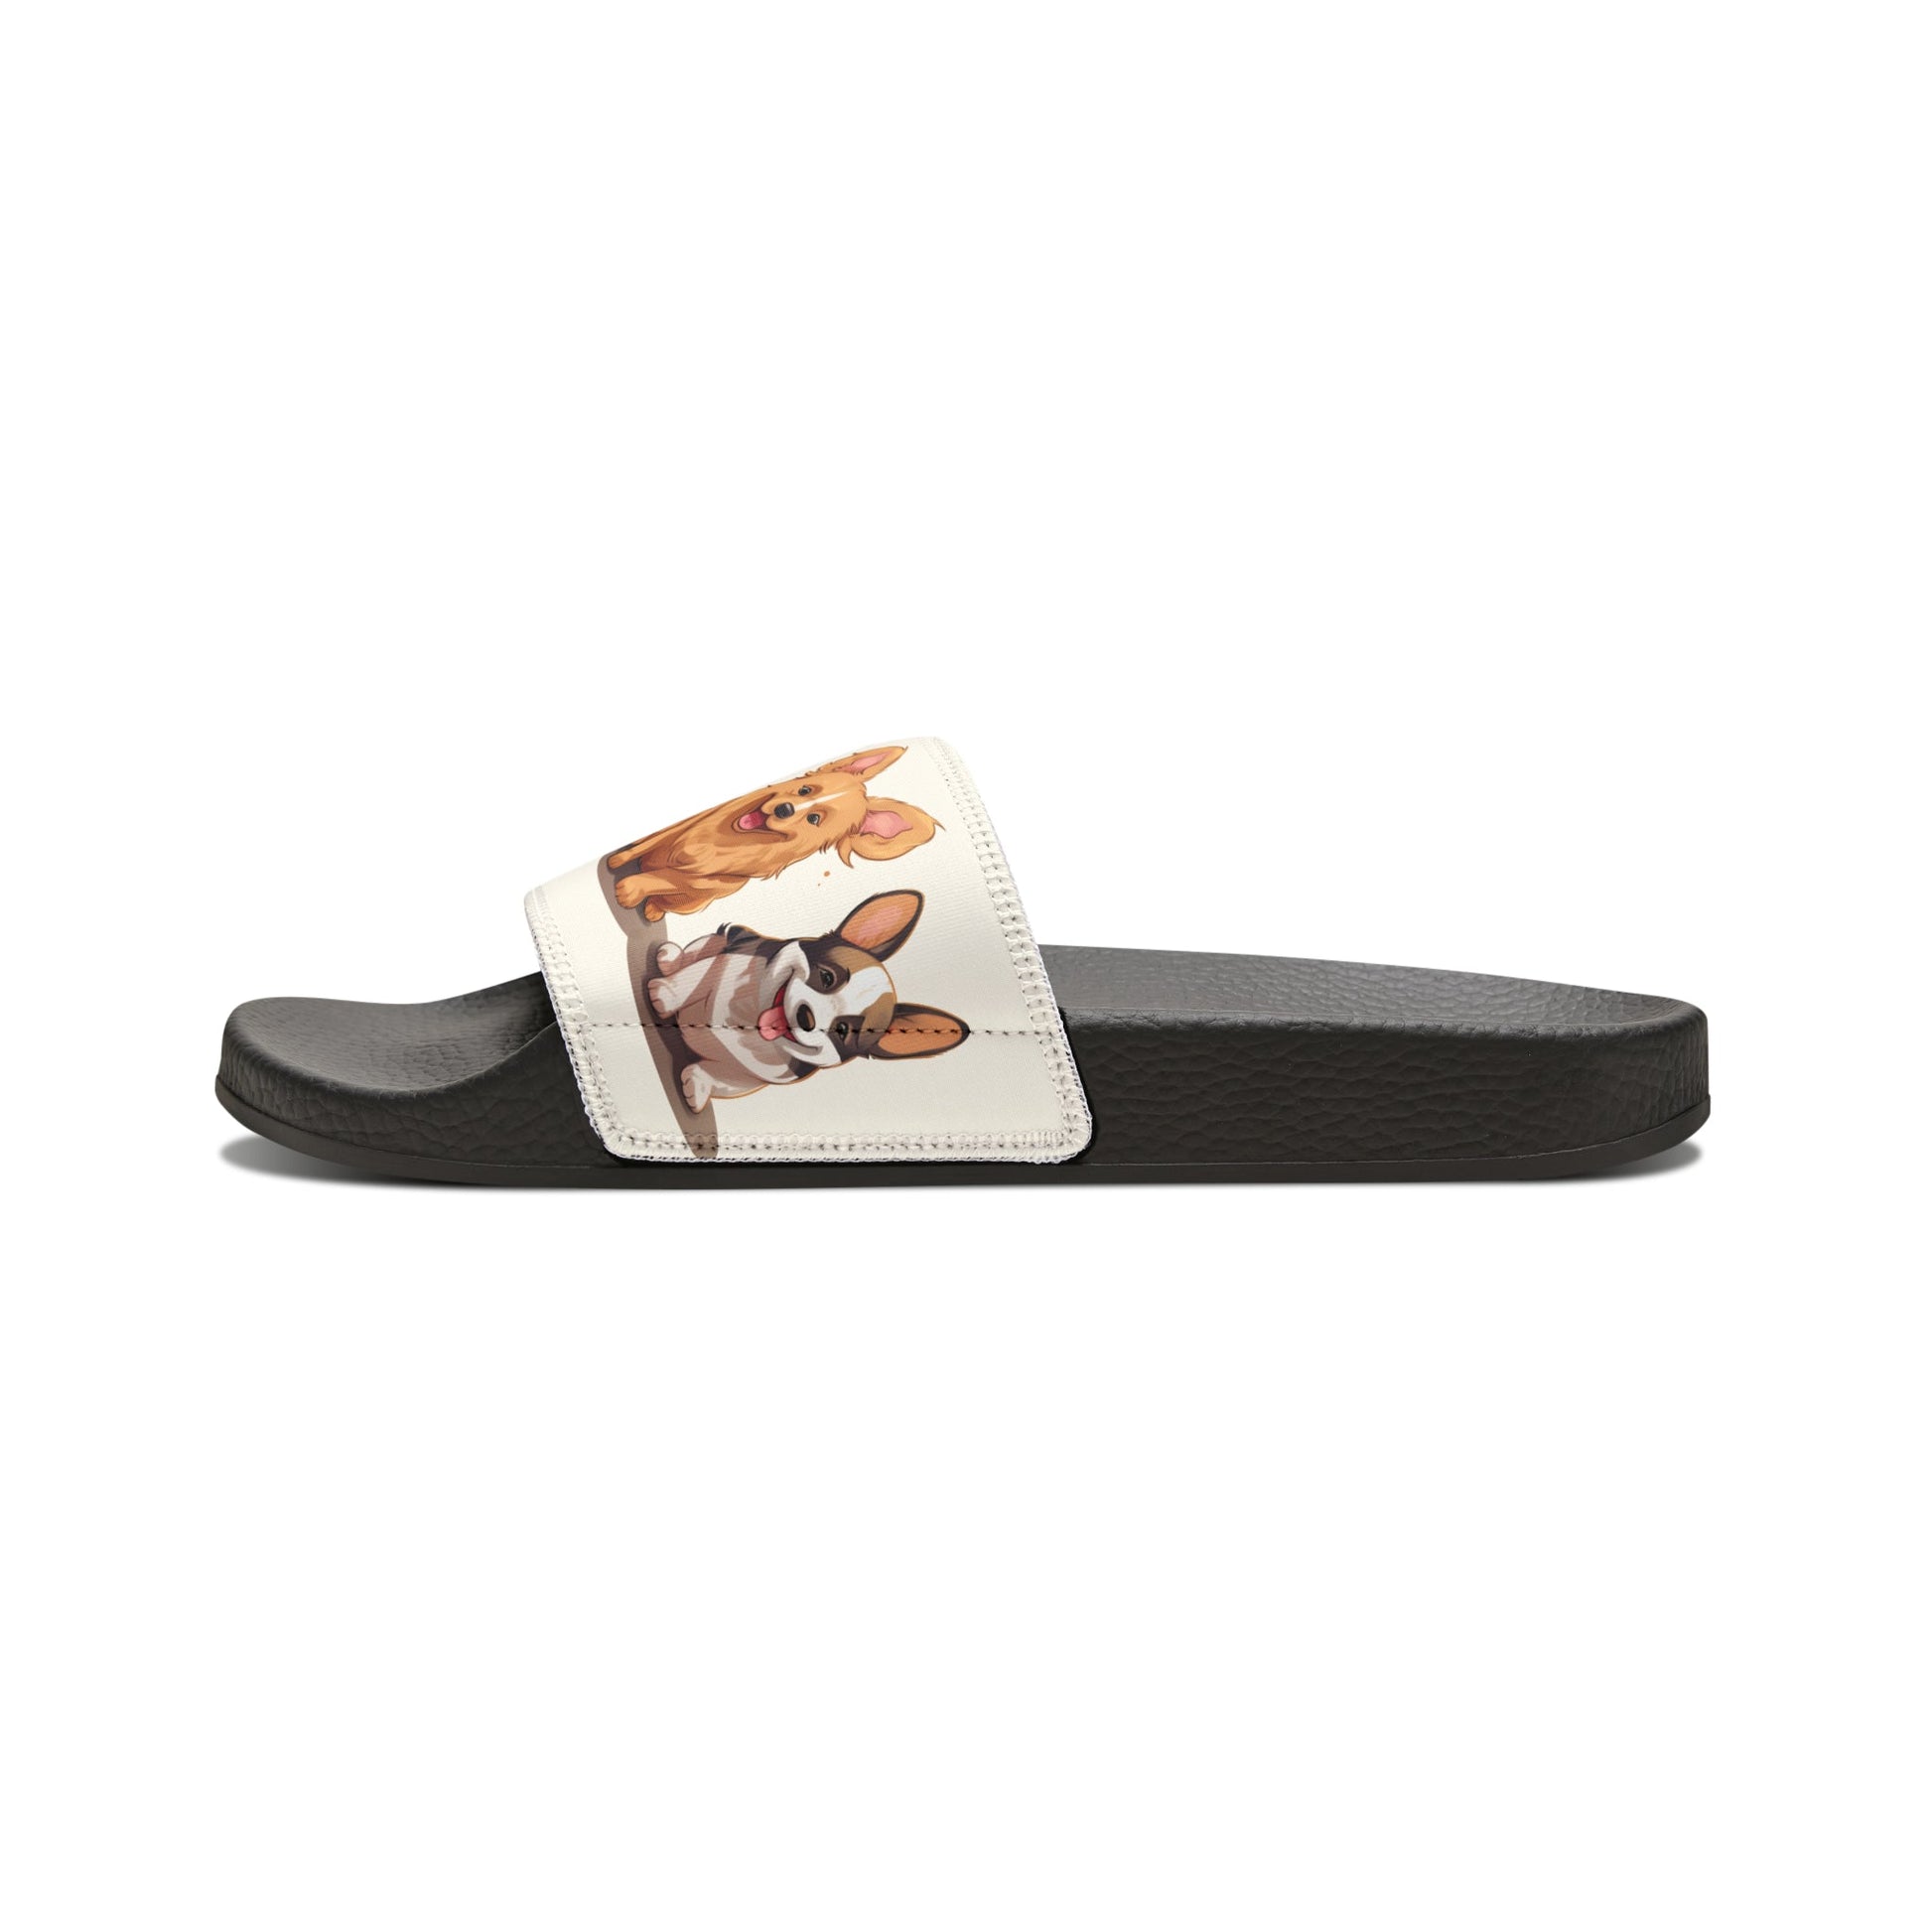 Corgi Dog Trendy Slip On Sandals, Slide Sandal Welsh Corgi, Intricate Detailed Cartoon - FlooredByArt